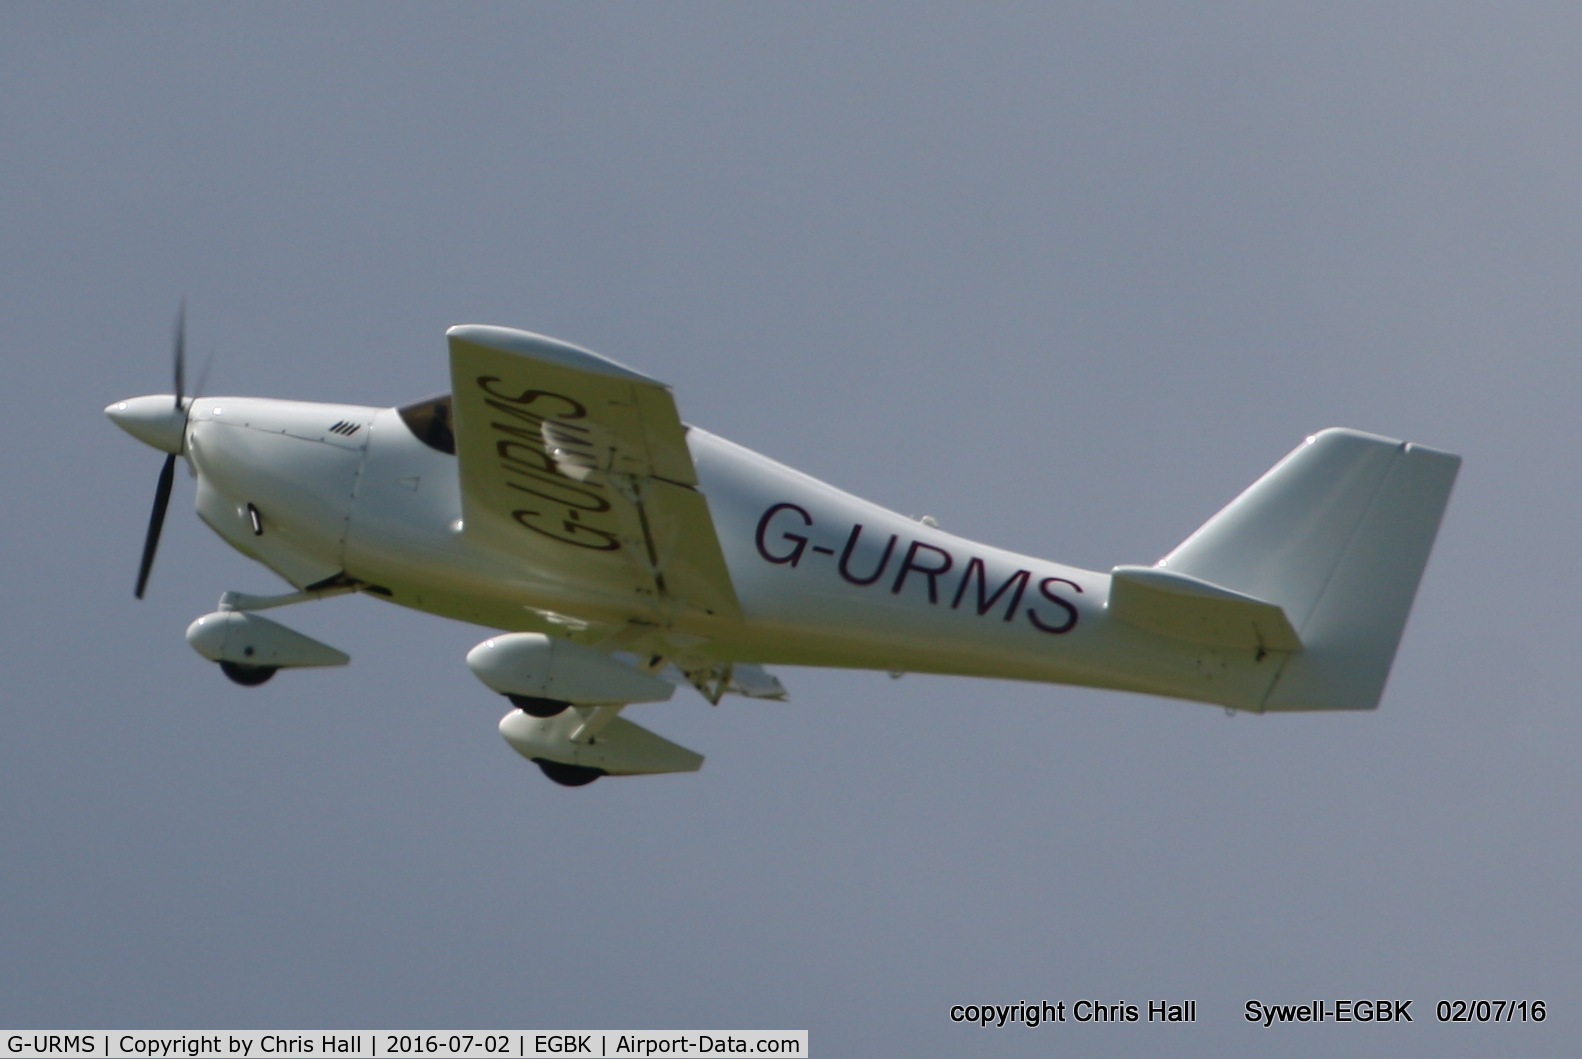 G-URMS, 2005 Europa Tri Gear C/N PFA 247-12922, at Aeroexpo 2016